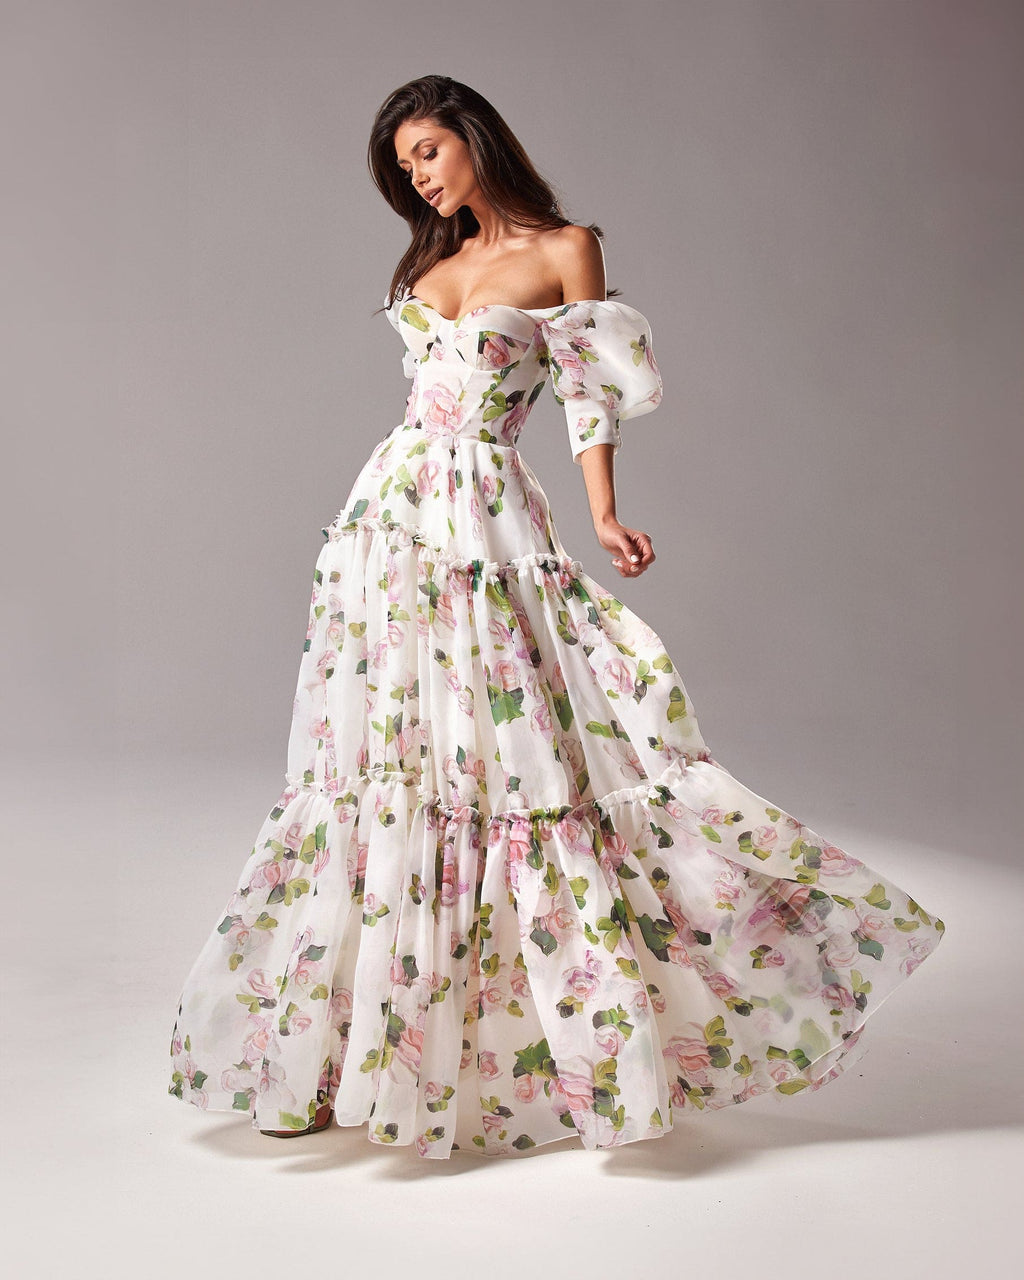 Apple Blossom Feminine voluminous sheer sleeves dress